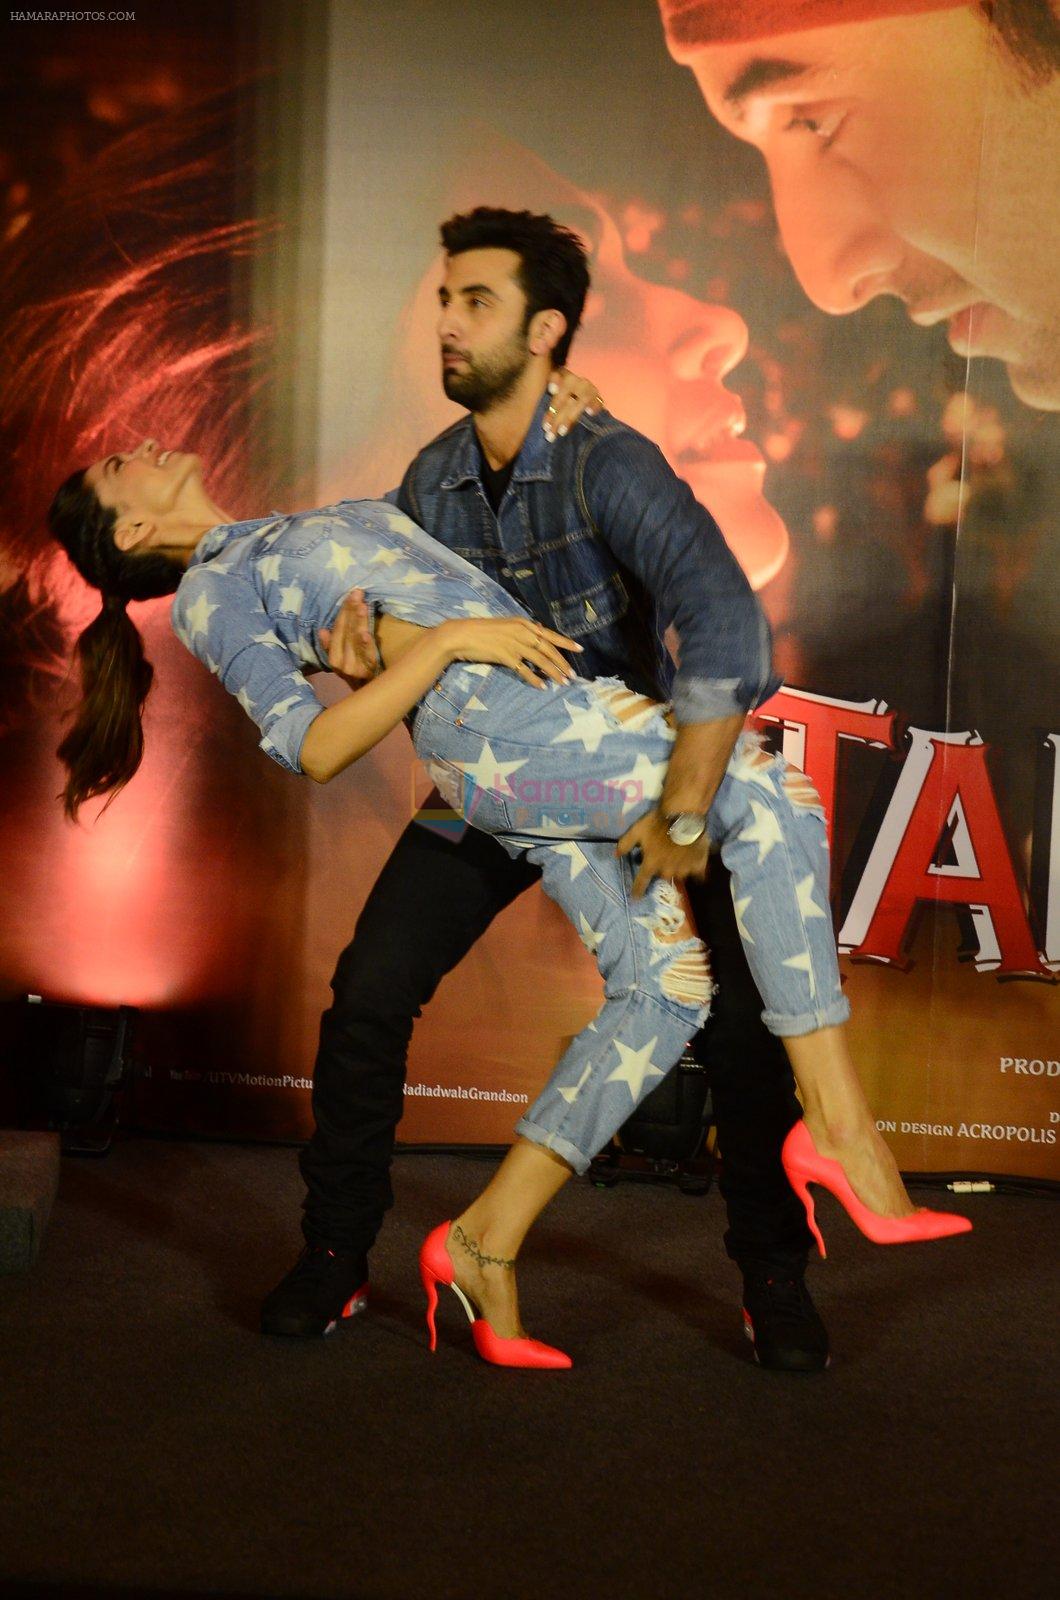 Deepika Padukone, Ranbir Kapoor at Tamasha promotions in Mumbai on 18th Nov 2015